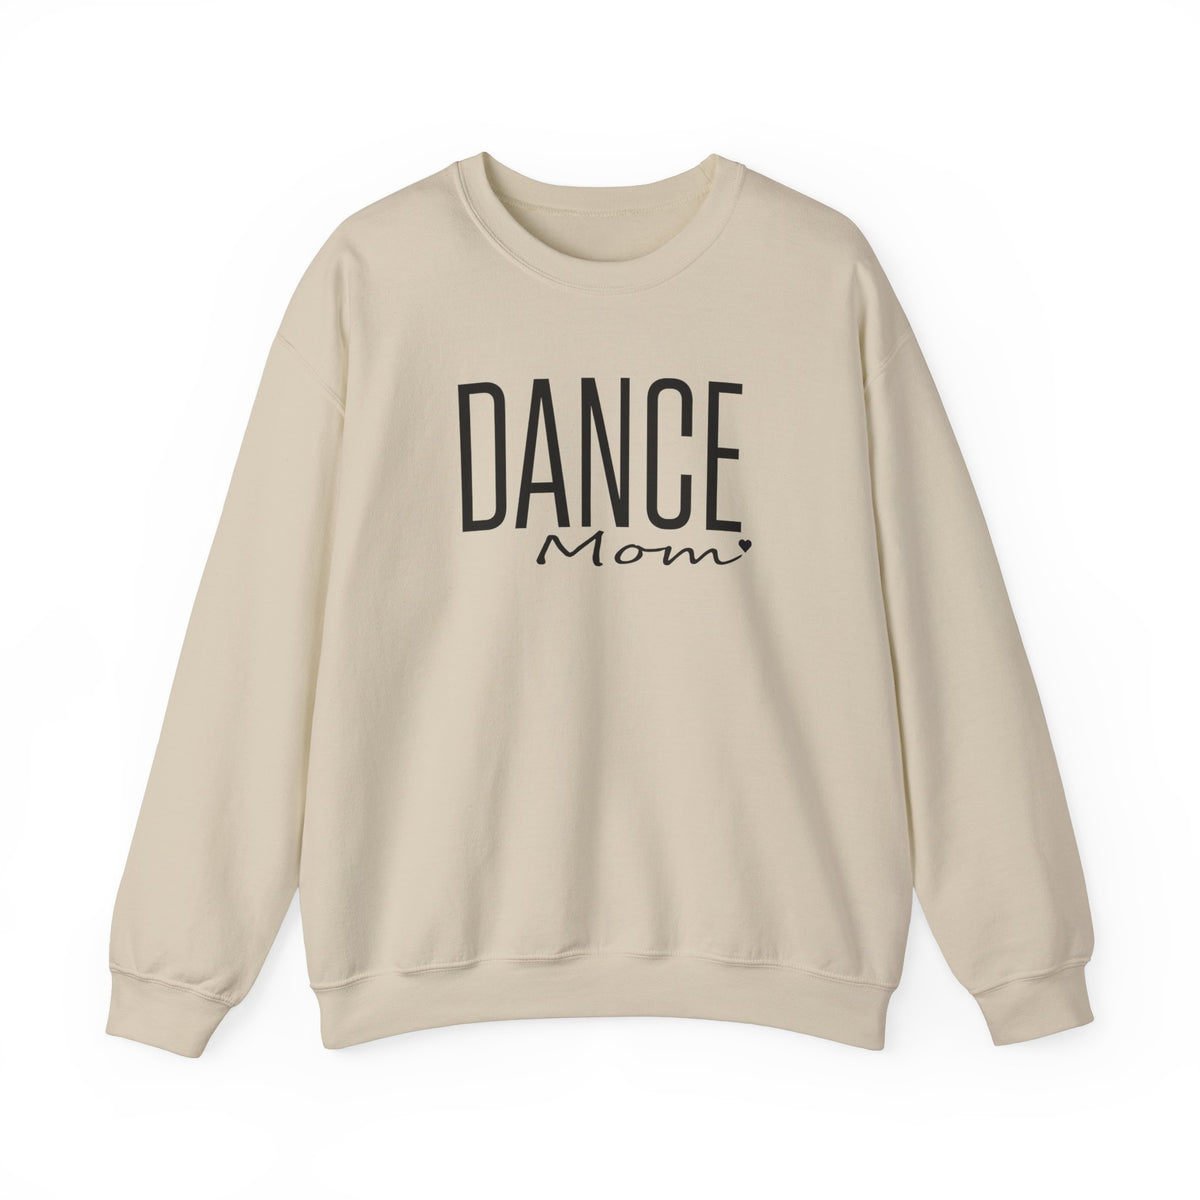 Dance Mom Sweatshirt | Mom Sweatshirt | Gift for Dance Mom